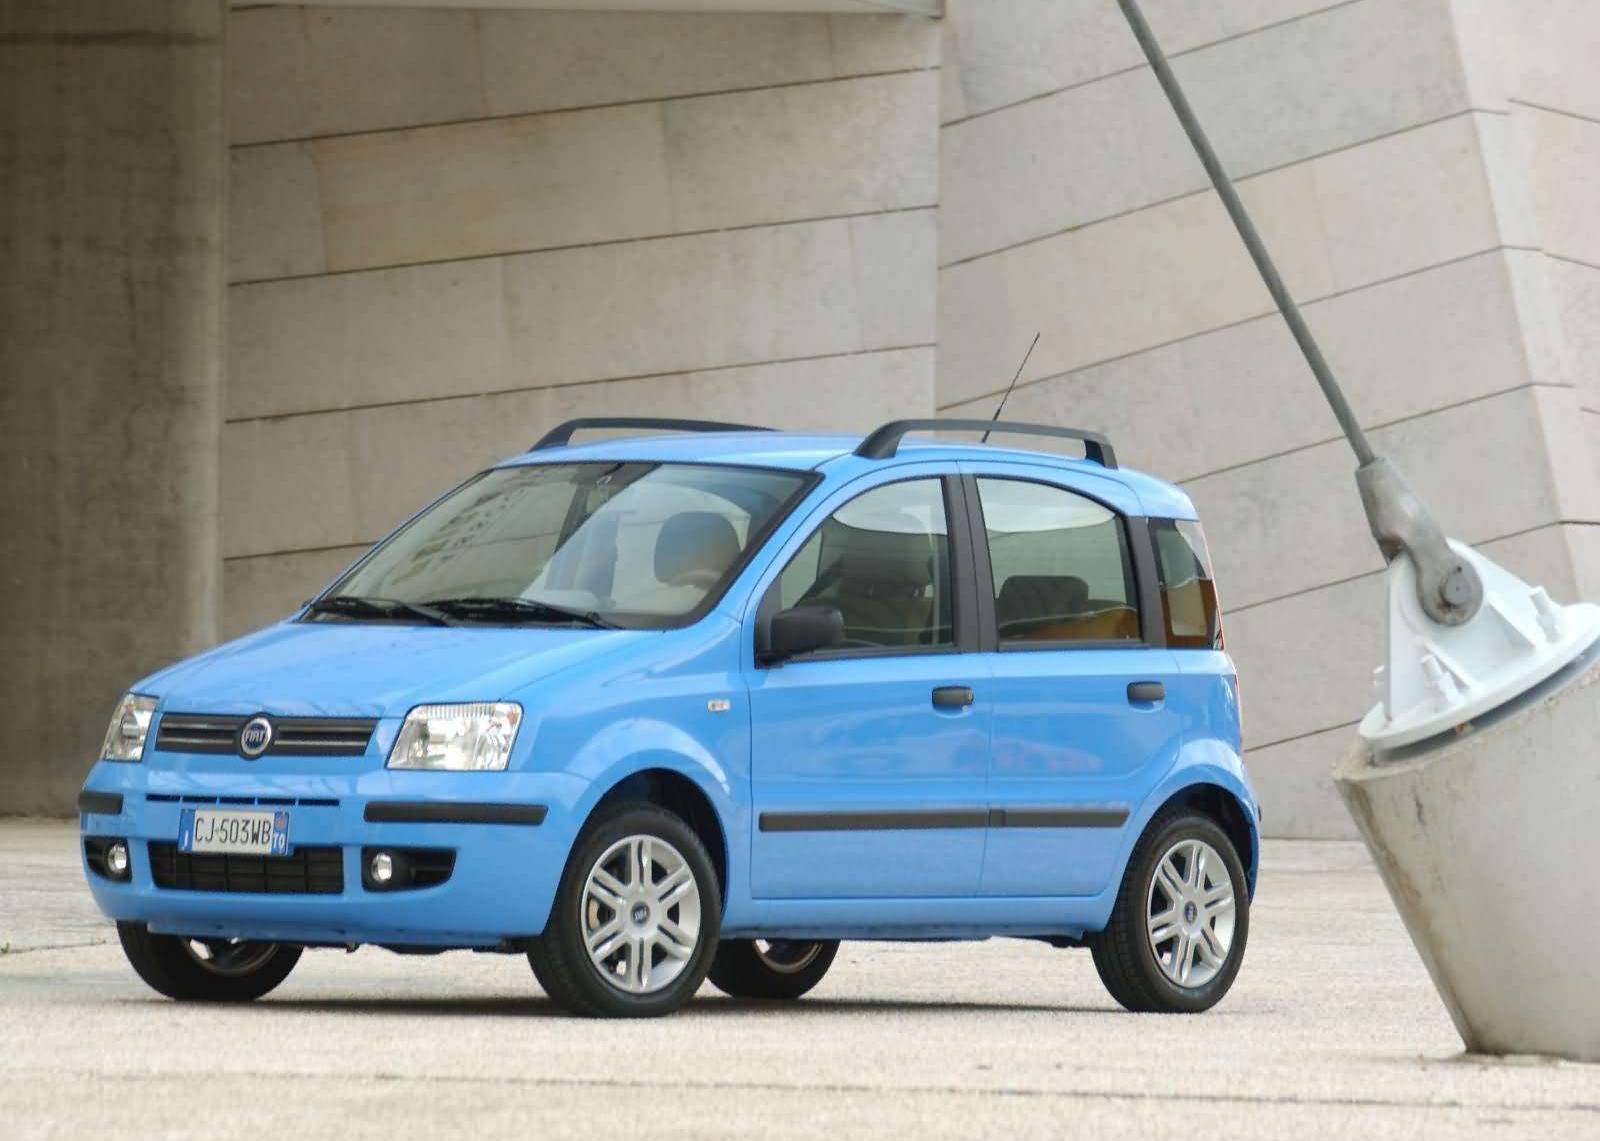 Fiat-Panda-2003-1600-04